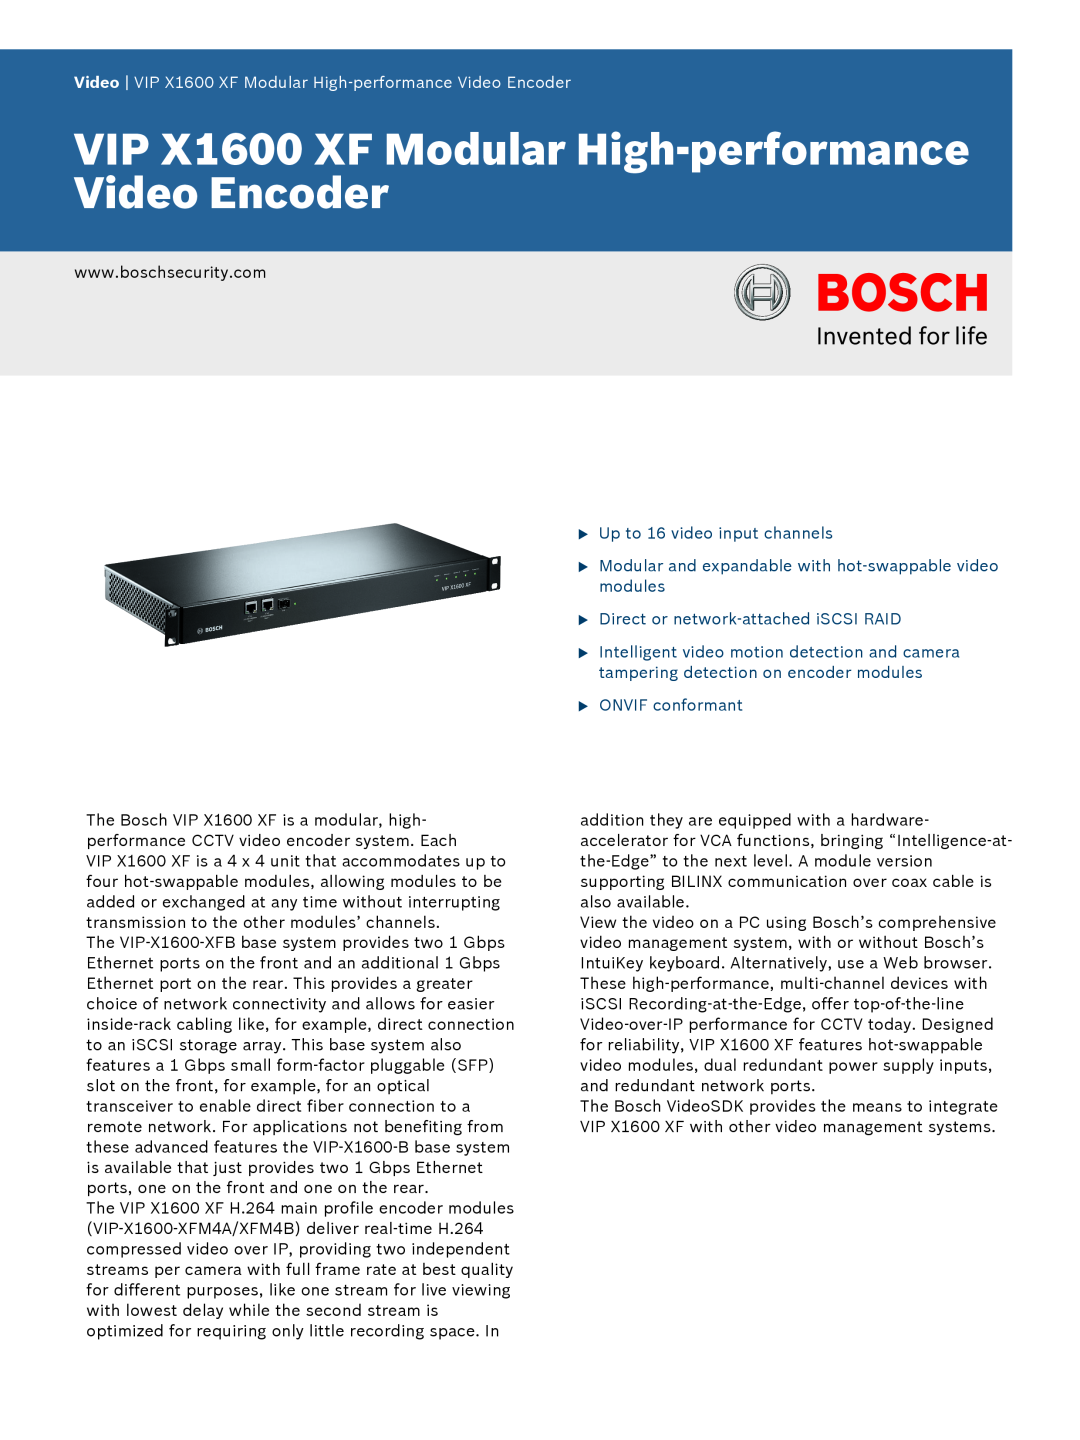 Bosch Appliances installation manual Divar XF, Digital Hybrid Recorder, en Installation manual 